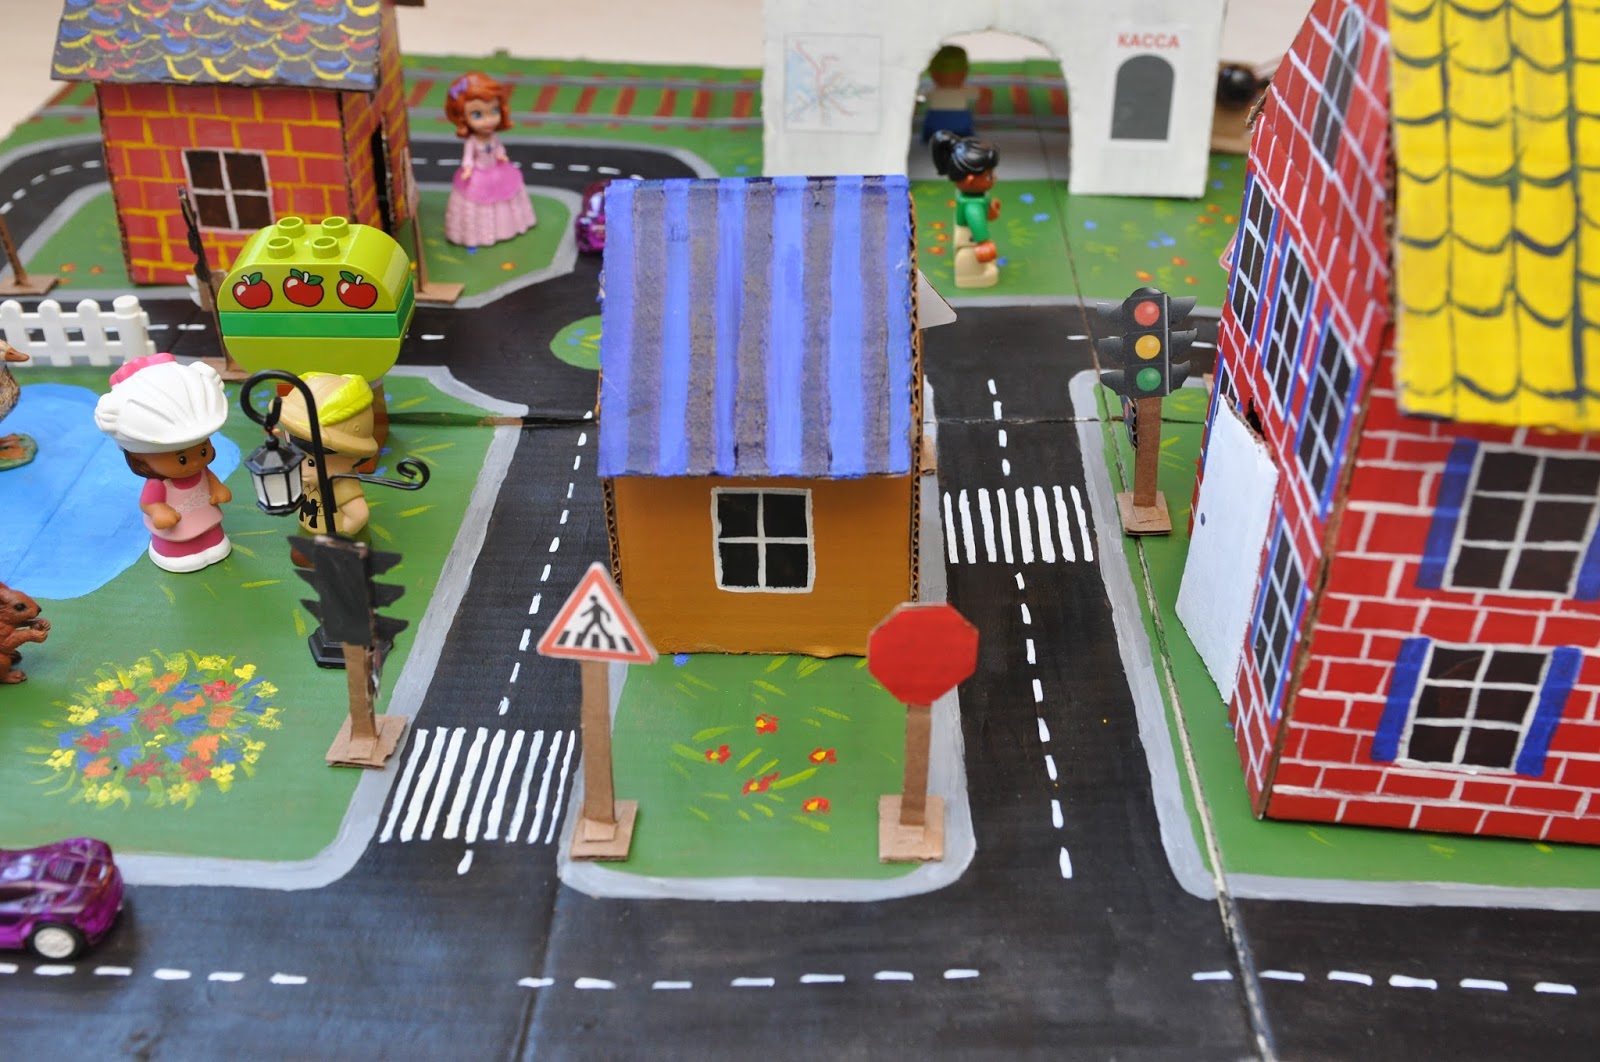 Макет улицы для детского сада